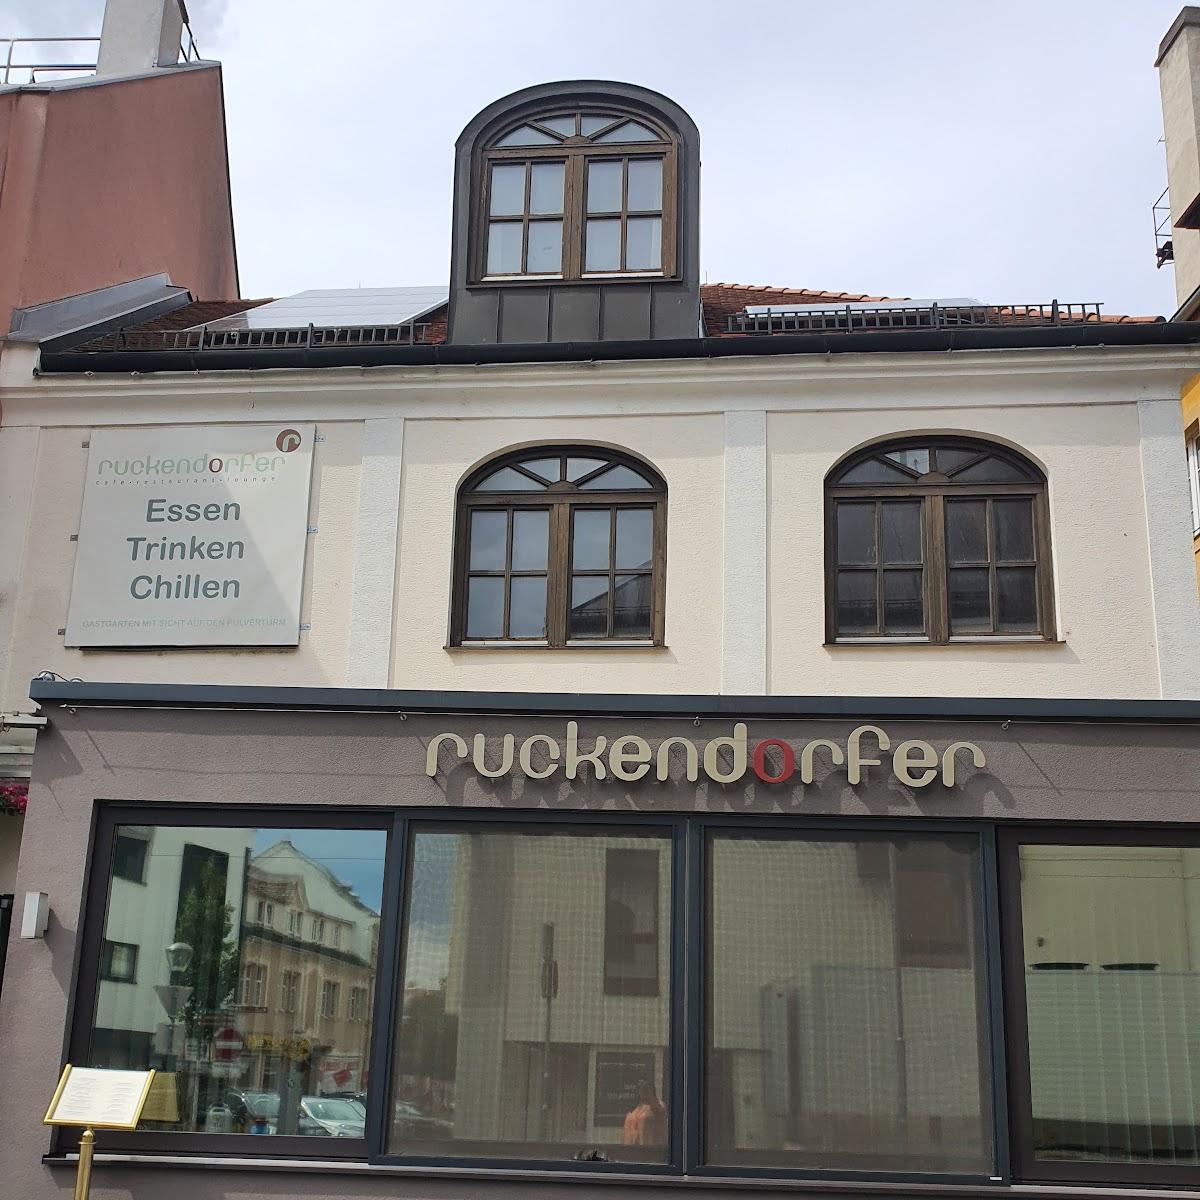 Restaurant "Restaurant Ruckendorfer" in Eisenstadt